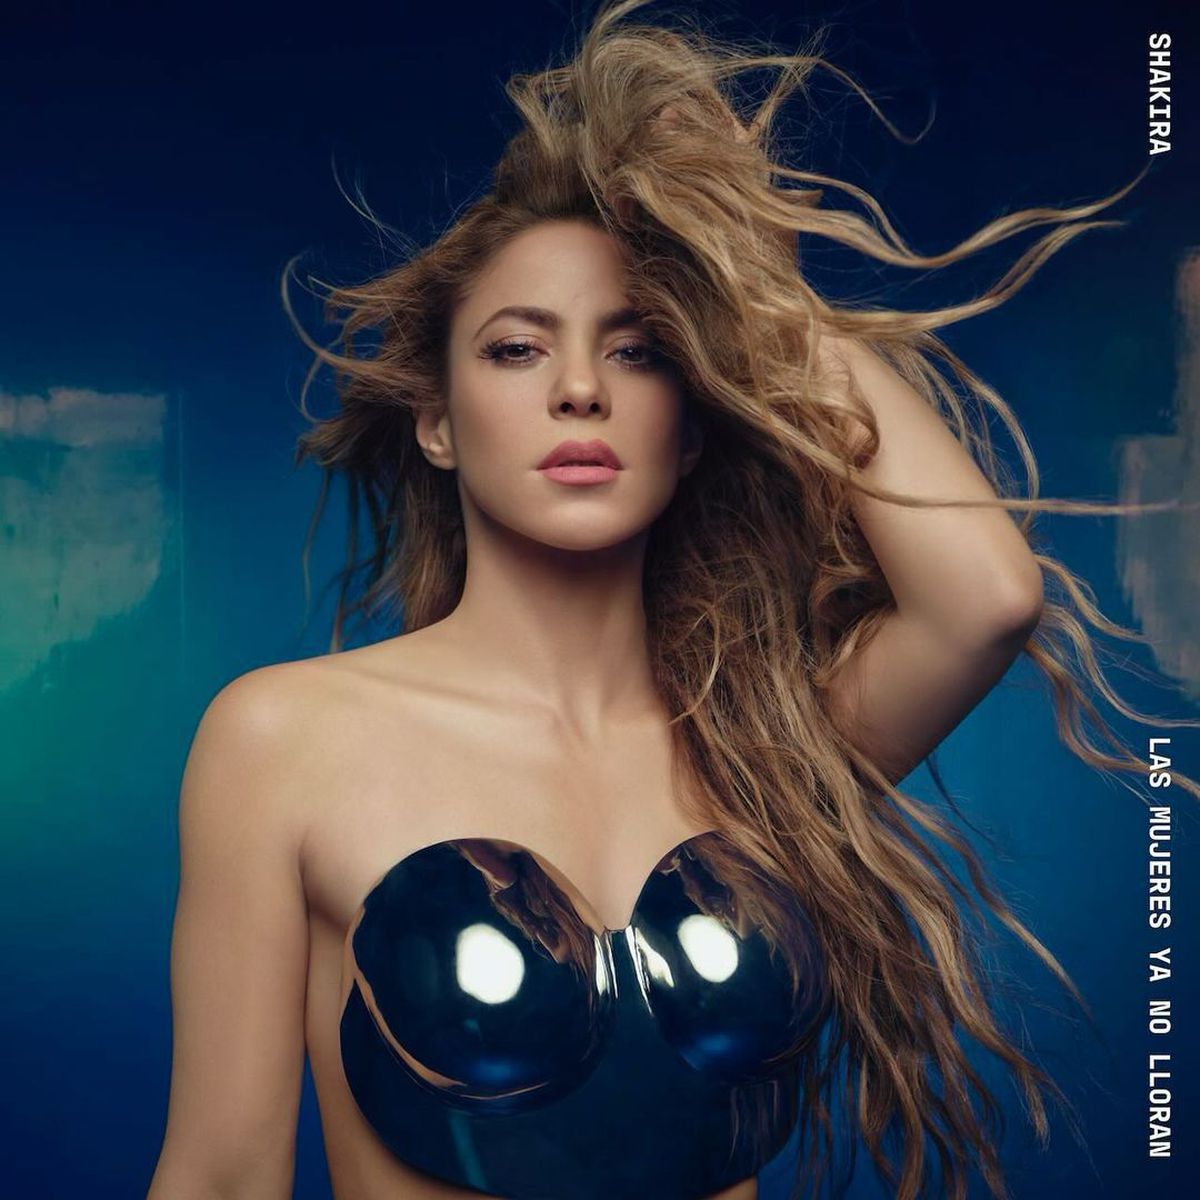 Shakira, „săgeți” către Pique în noua melodie? Mesajul în versuri pentru fundașul Barcelonei